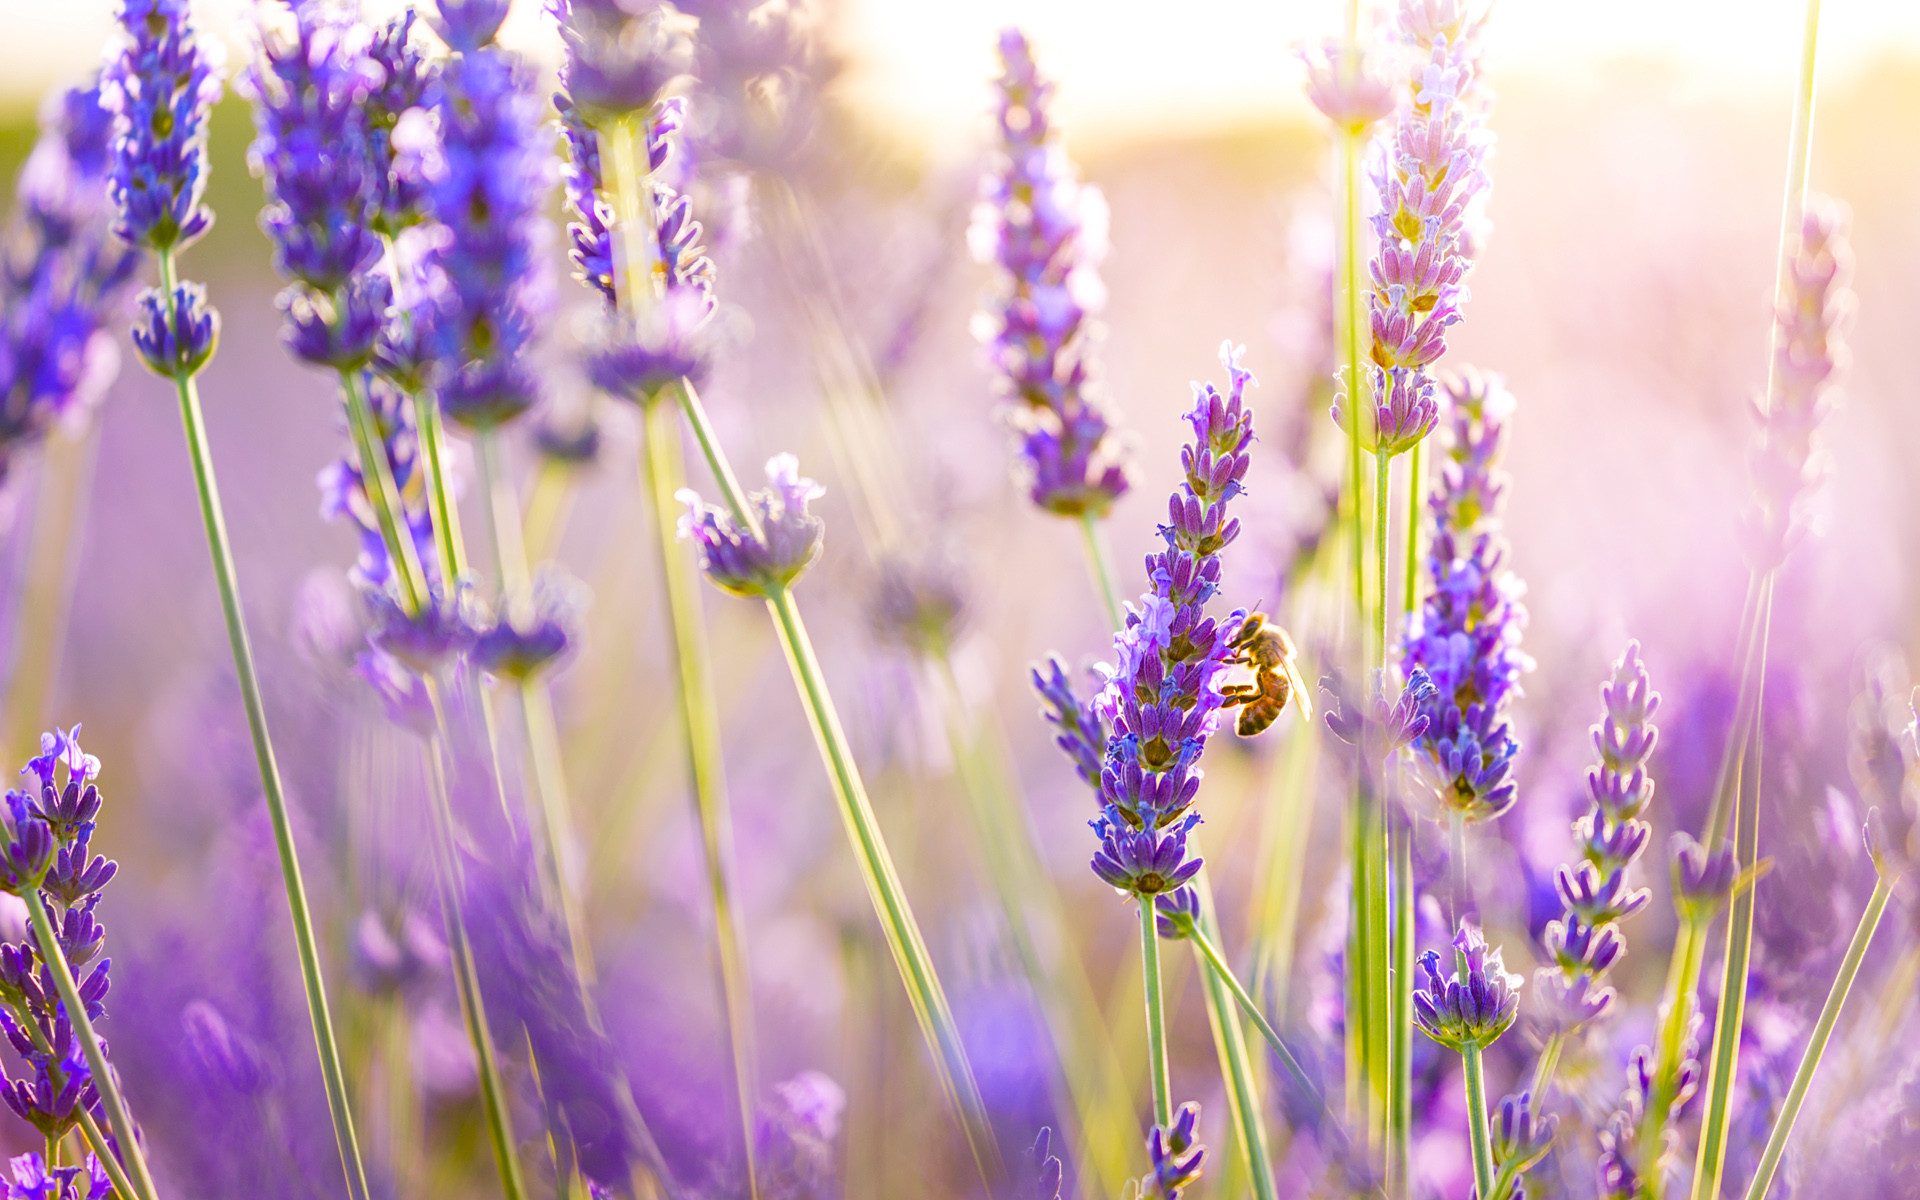 Những hình nền hoa lavender đẹp lung linh sẽ khiến bạn vô cùng thích thú với vẻ đẹp dịu dàng của hoa. Hãy thưởng thức những bức ảnh tuyệt đẹp này và cùng hòa mình vào không gian lãng mạn của hoa lavender.